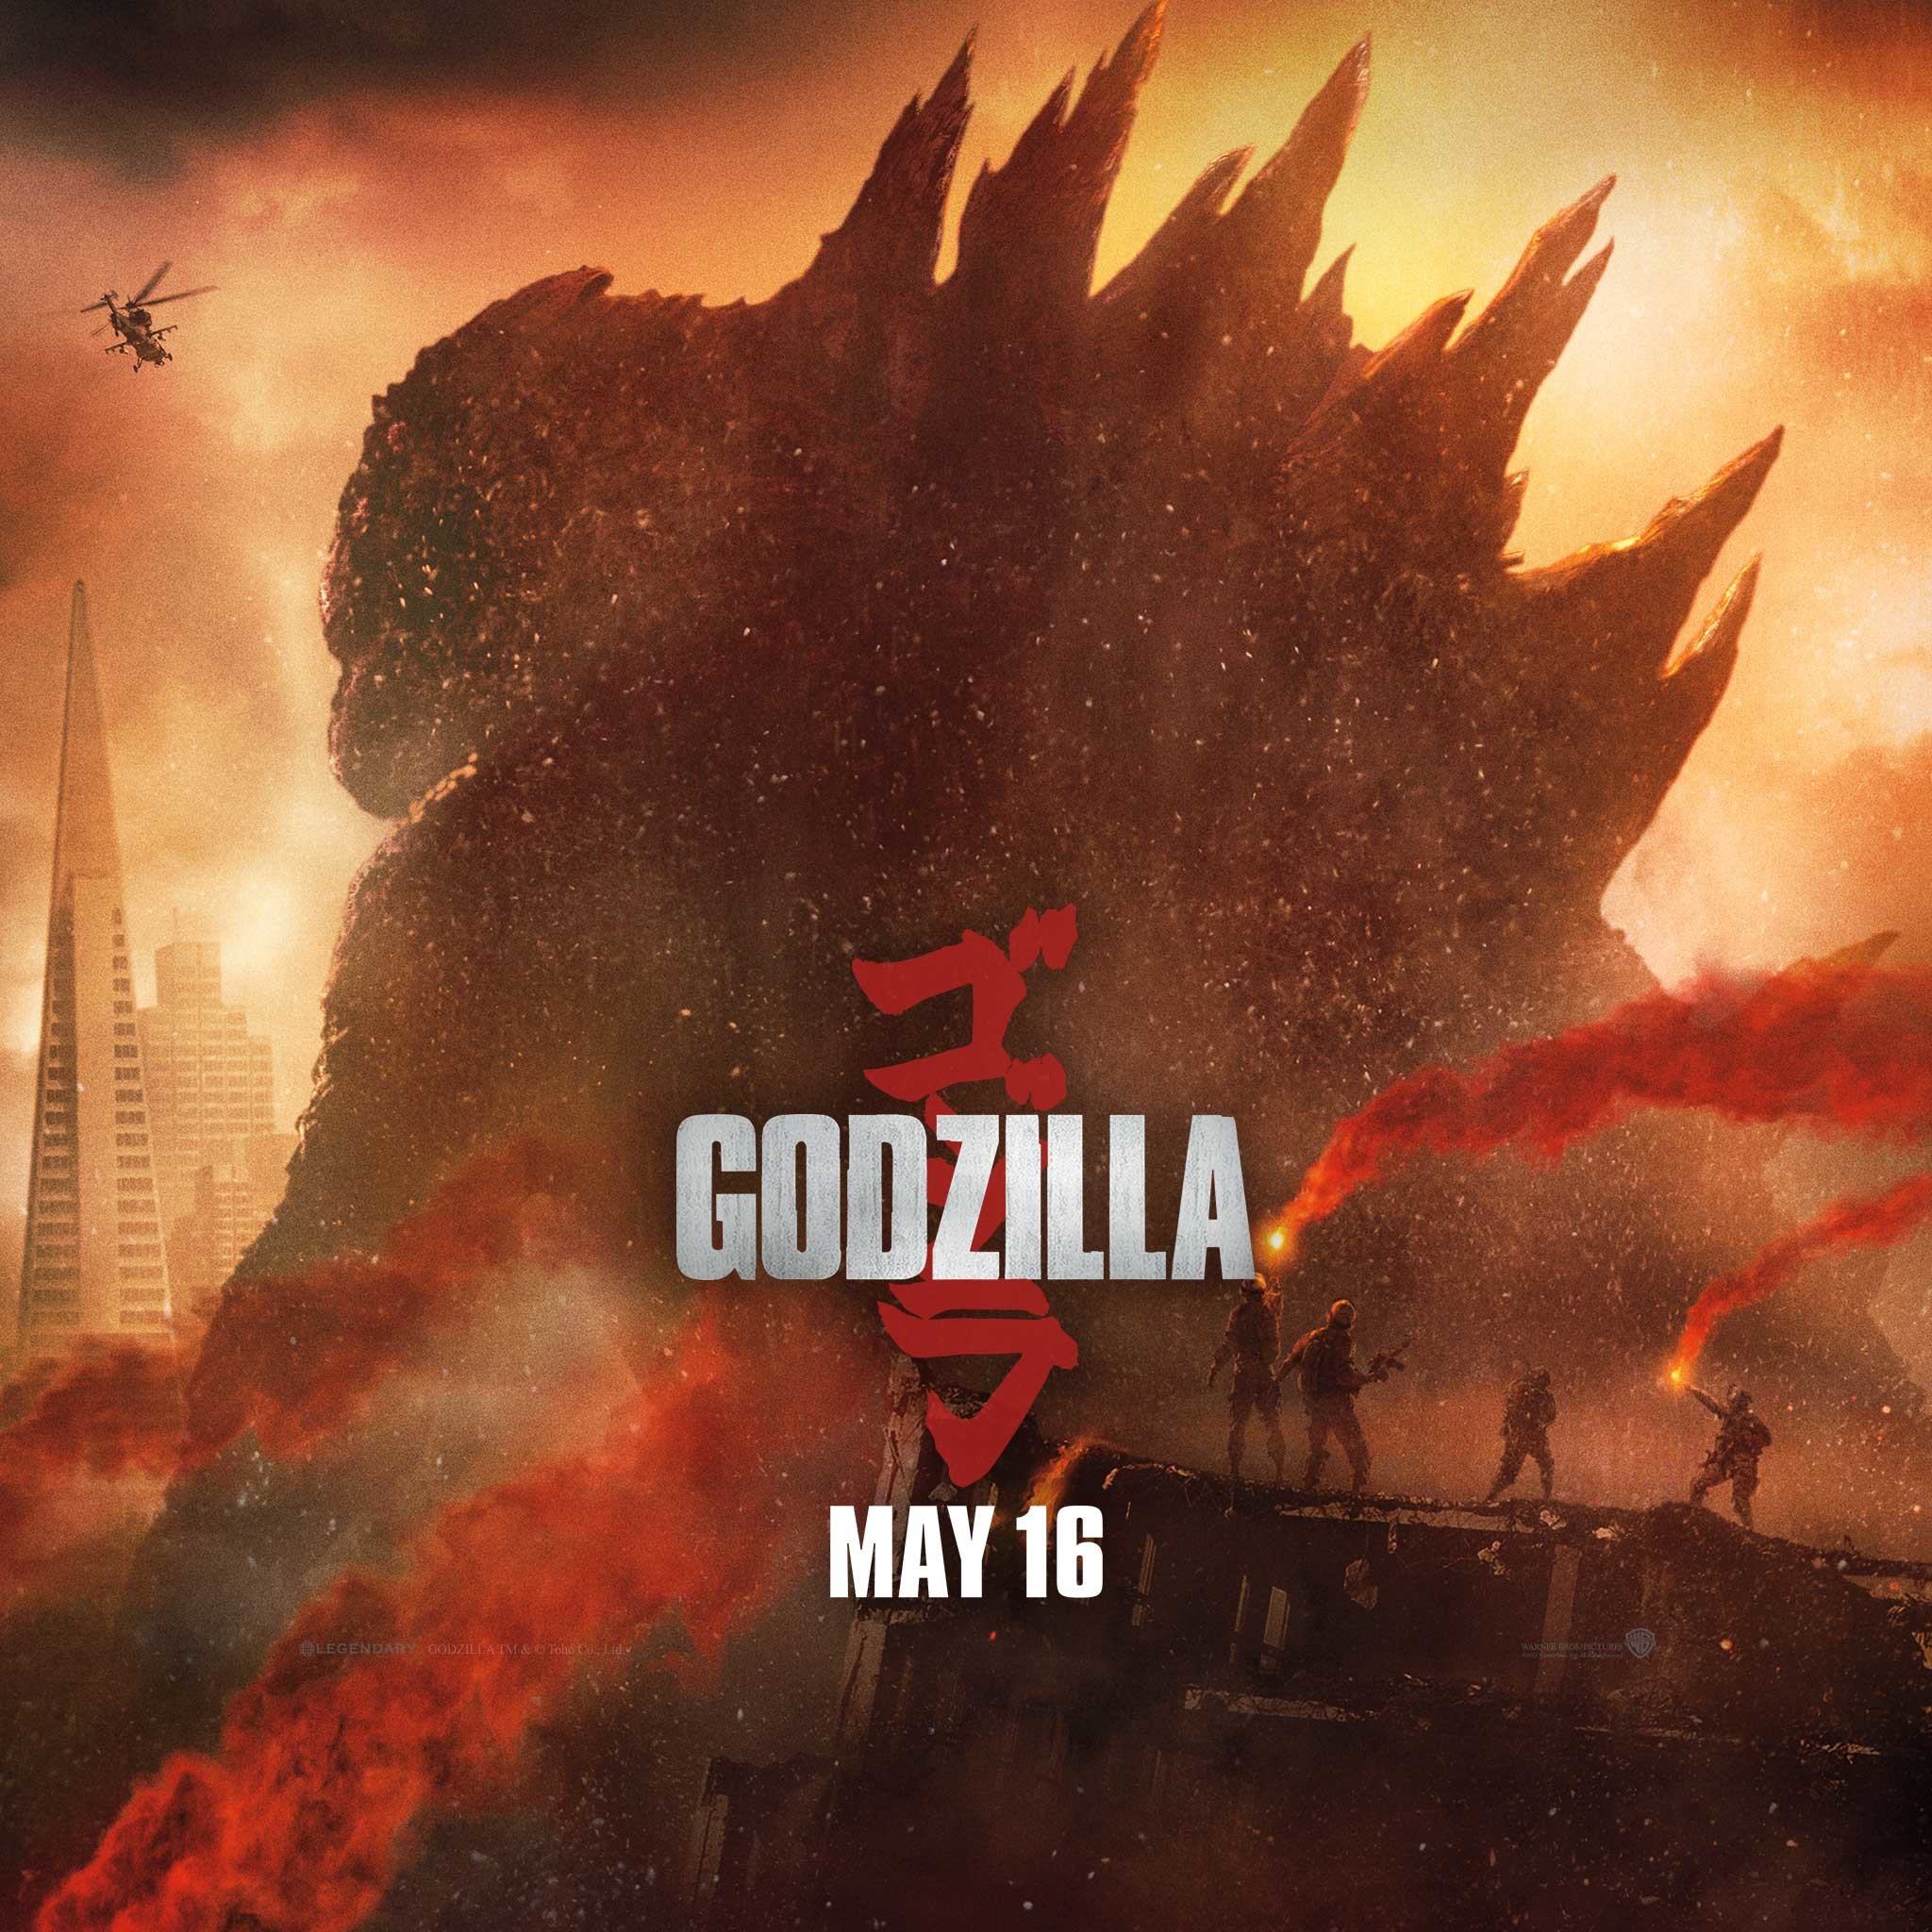 Godzilla movie 2014 wallpaper ipad